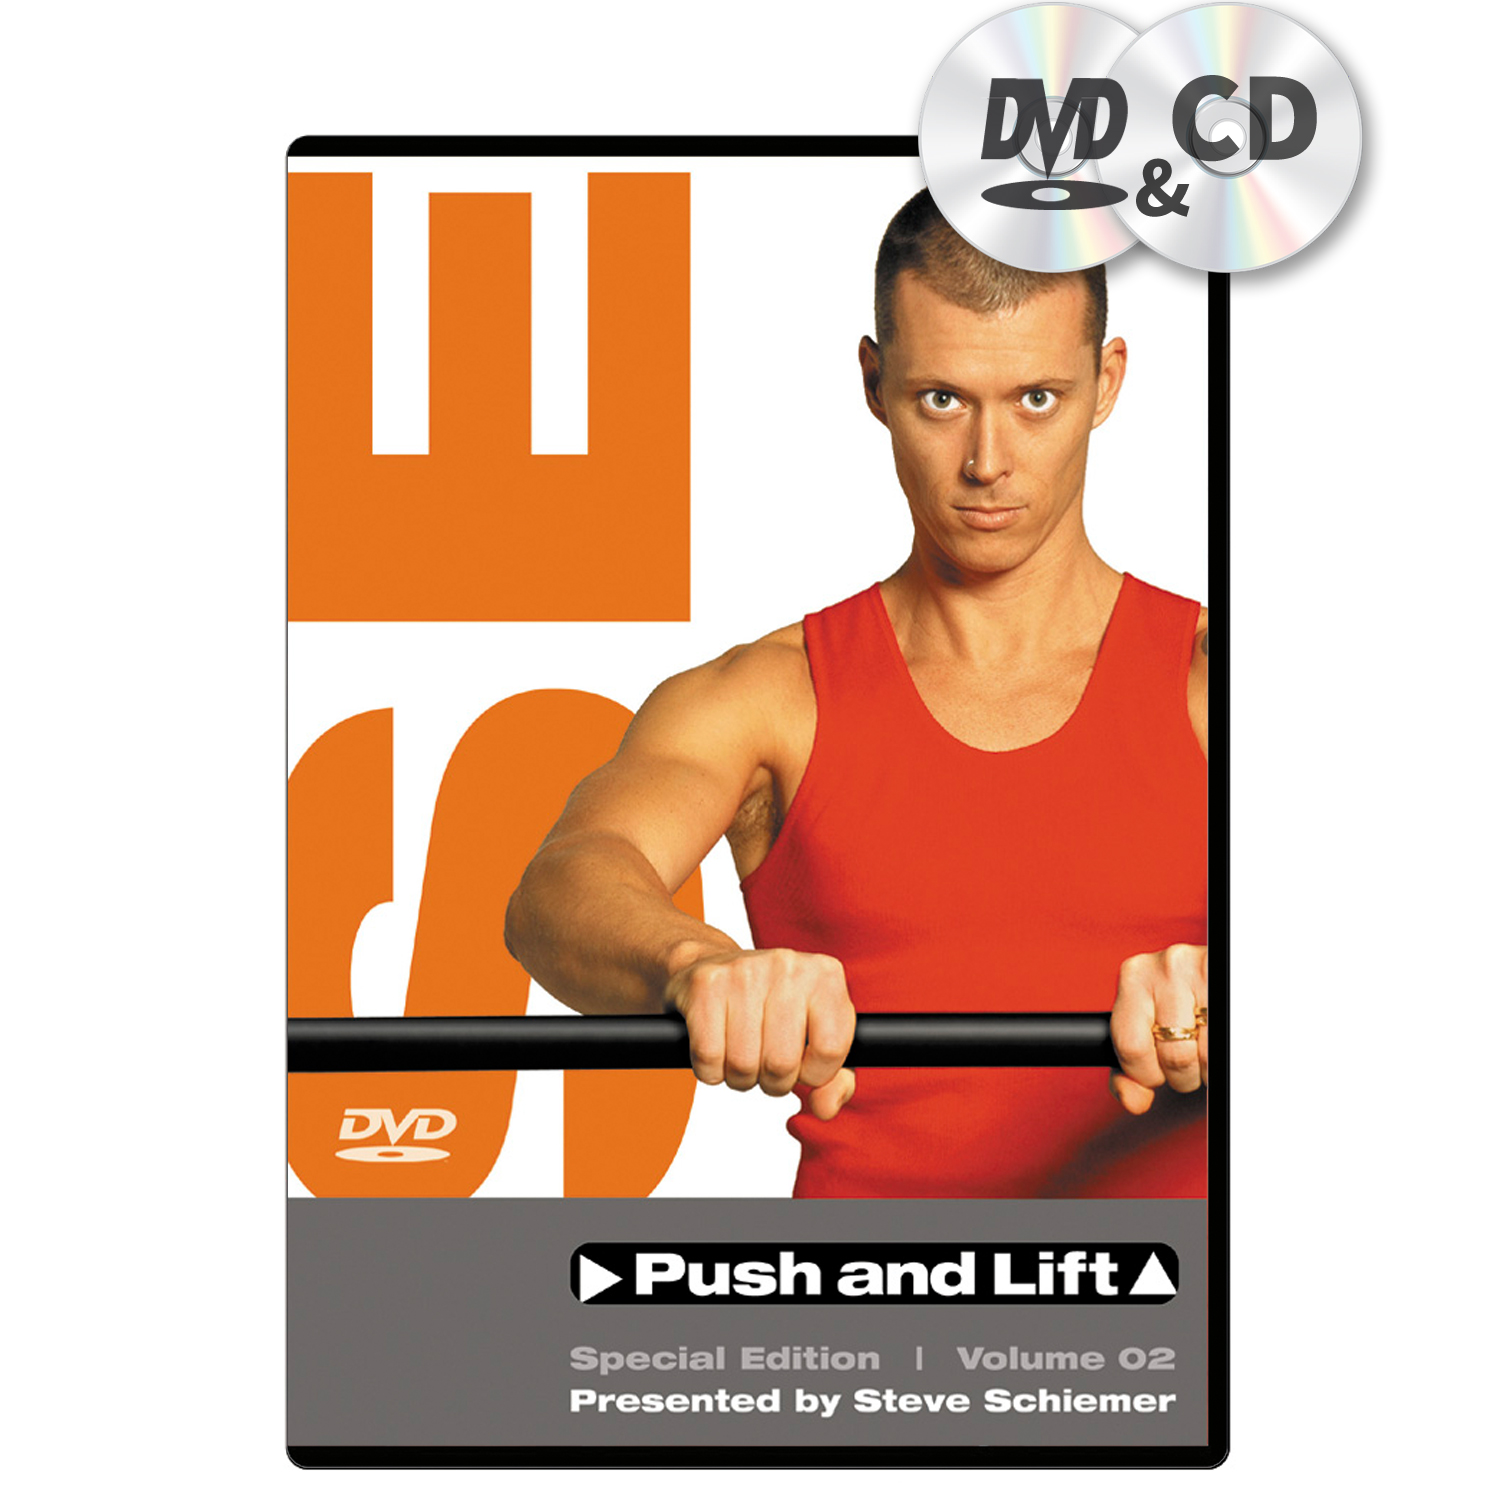 Push and Lift Vol 02 - DVD & CD